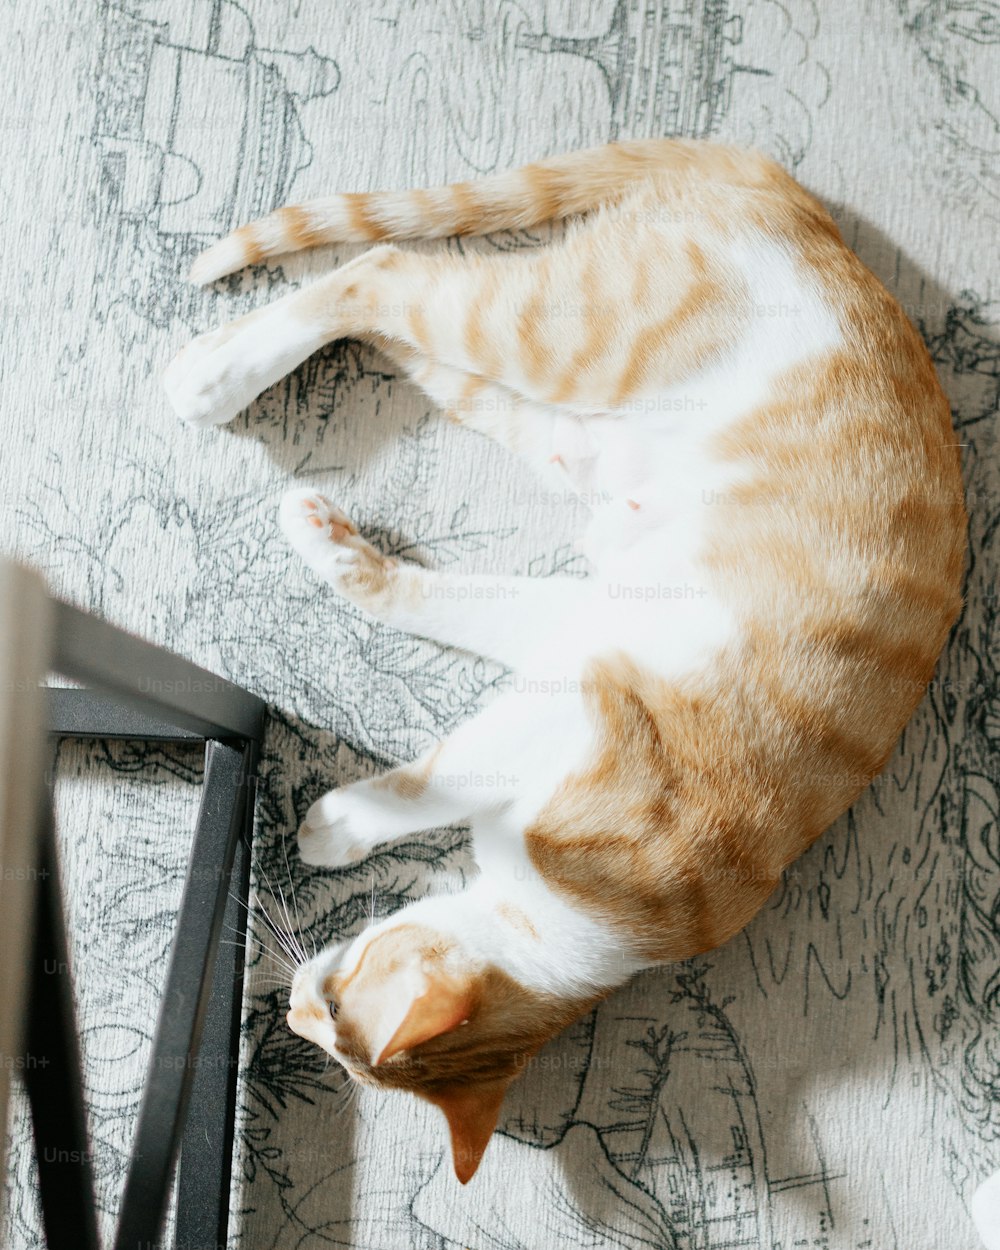 주황색과 흰색 고양이가 바닥에 누워 있다